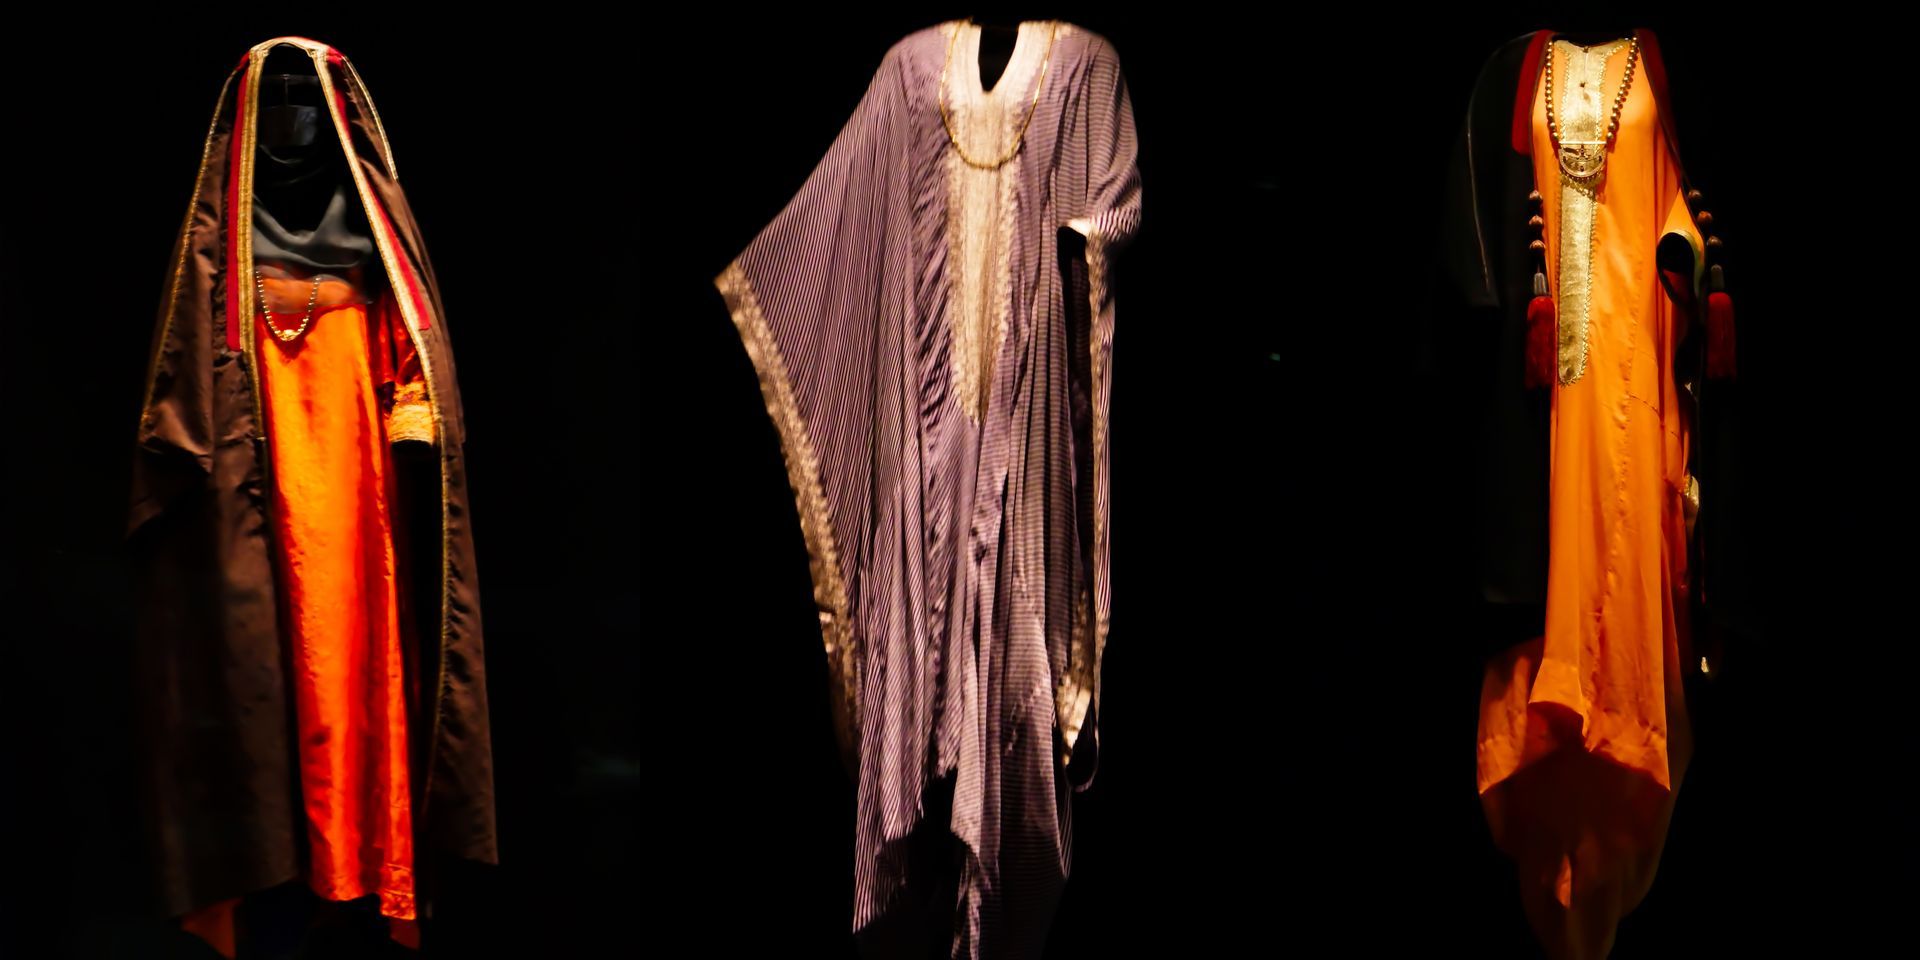 Katar - traditionelle Kleidung